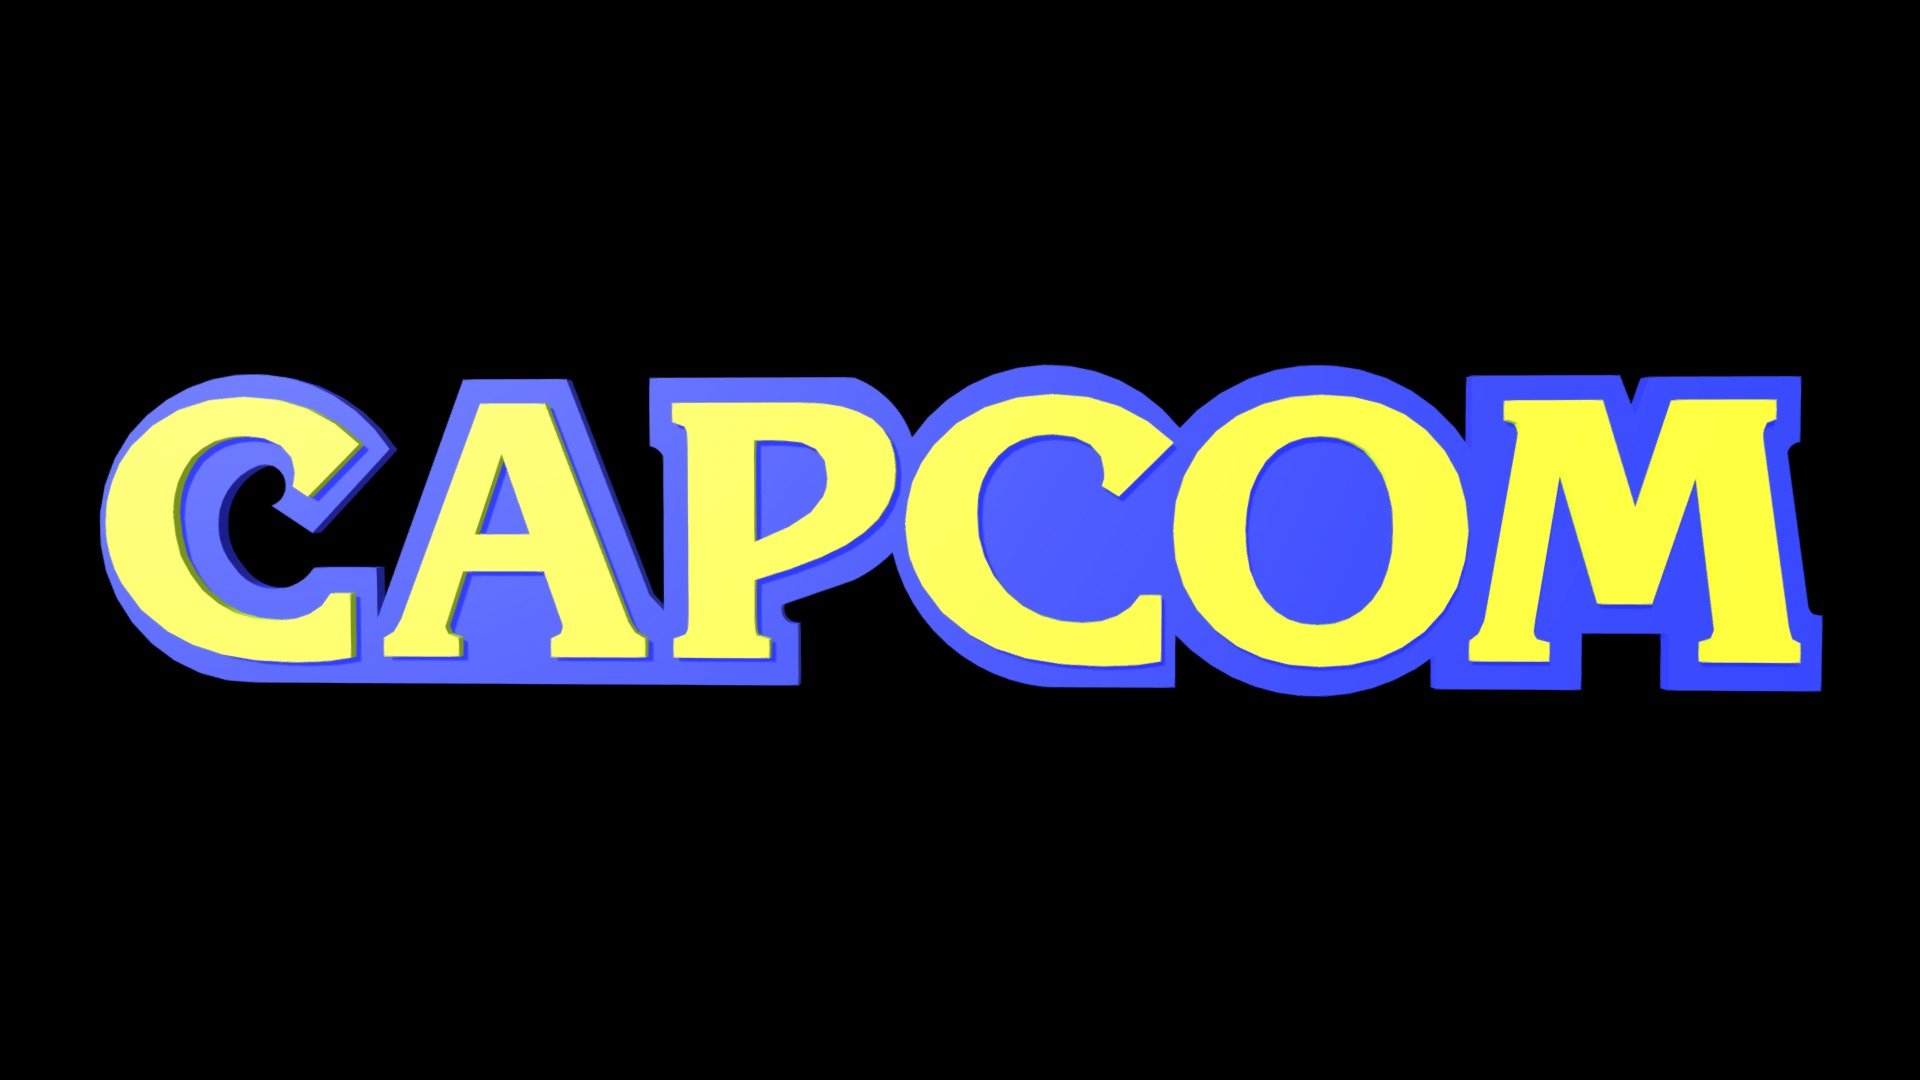 شرکت Capcom در مورد افزایش قیمت بازی ها تصمیم خواهد گرفت